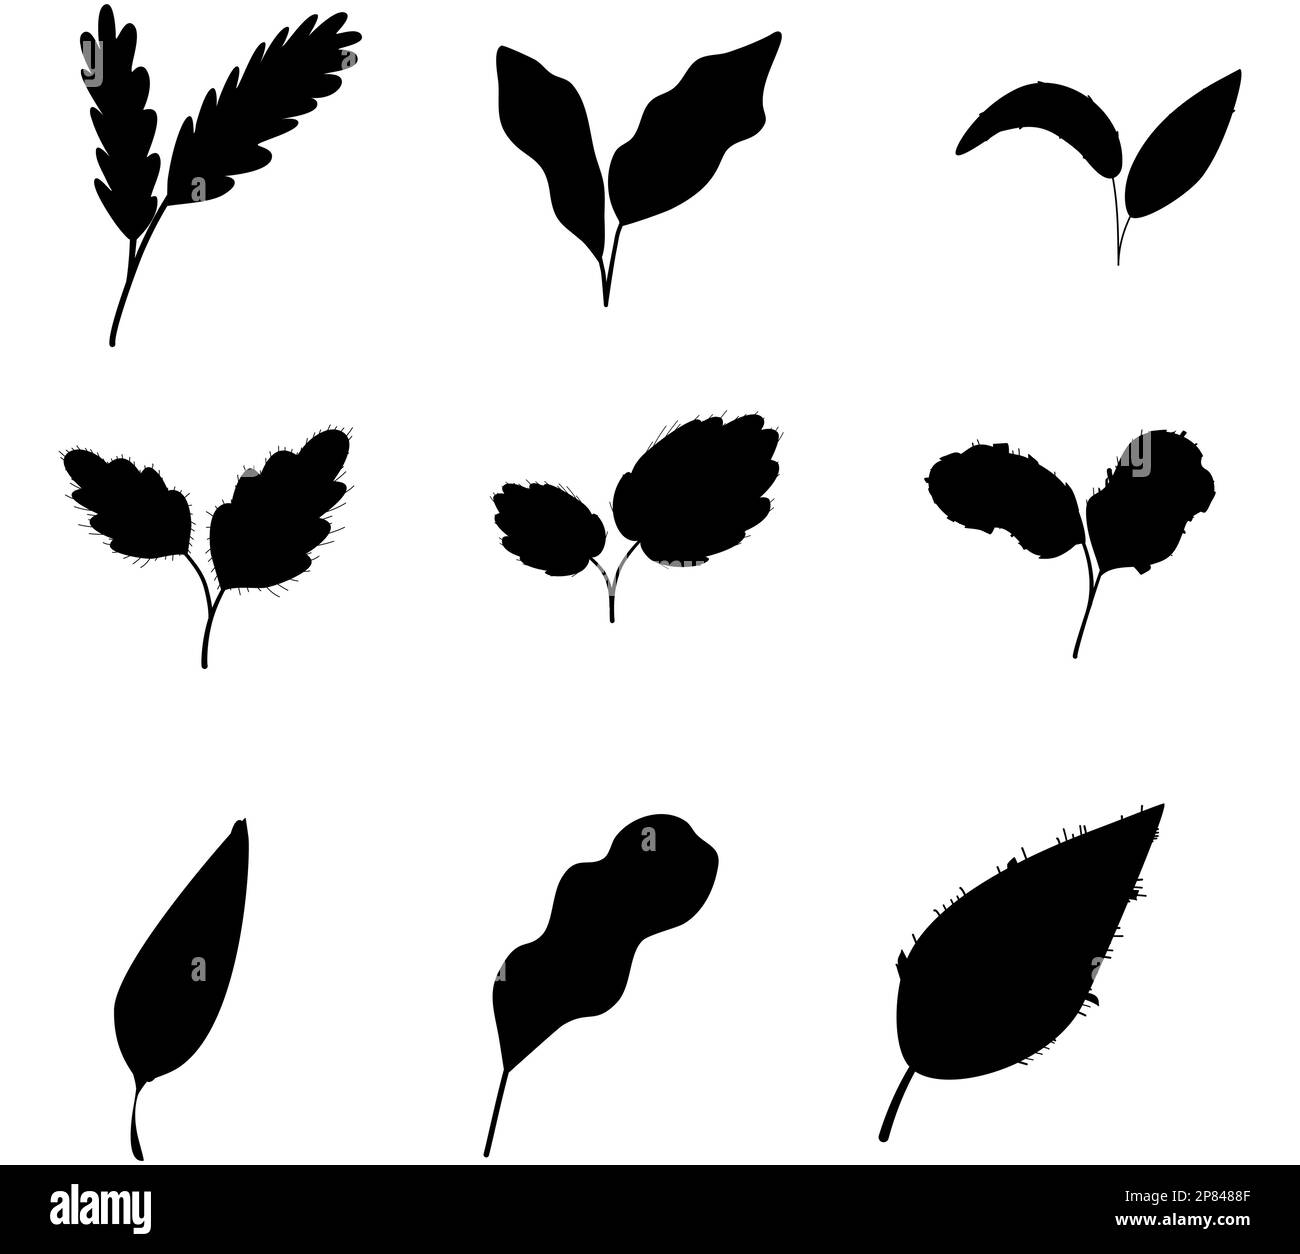 Satz schwarzer Silhouetten von Blättern auf weißem Hintergrund, Vektordarstellung, tropisches exotisches Laub Stock Vektor